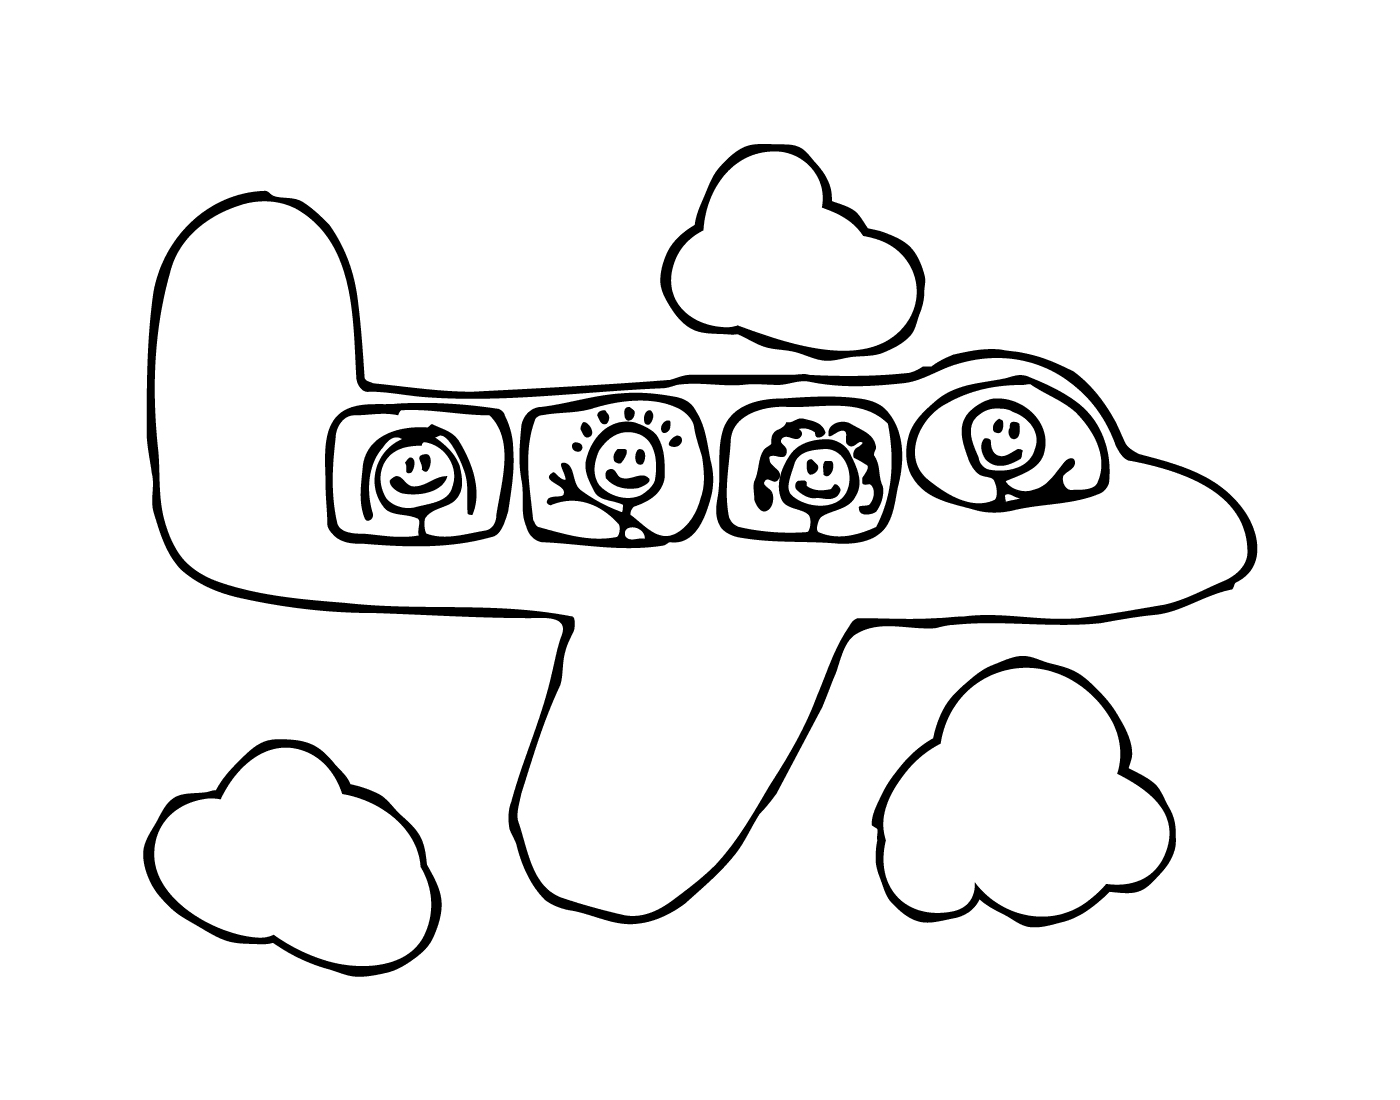  Um avião com quatro pessoas a bordo 